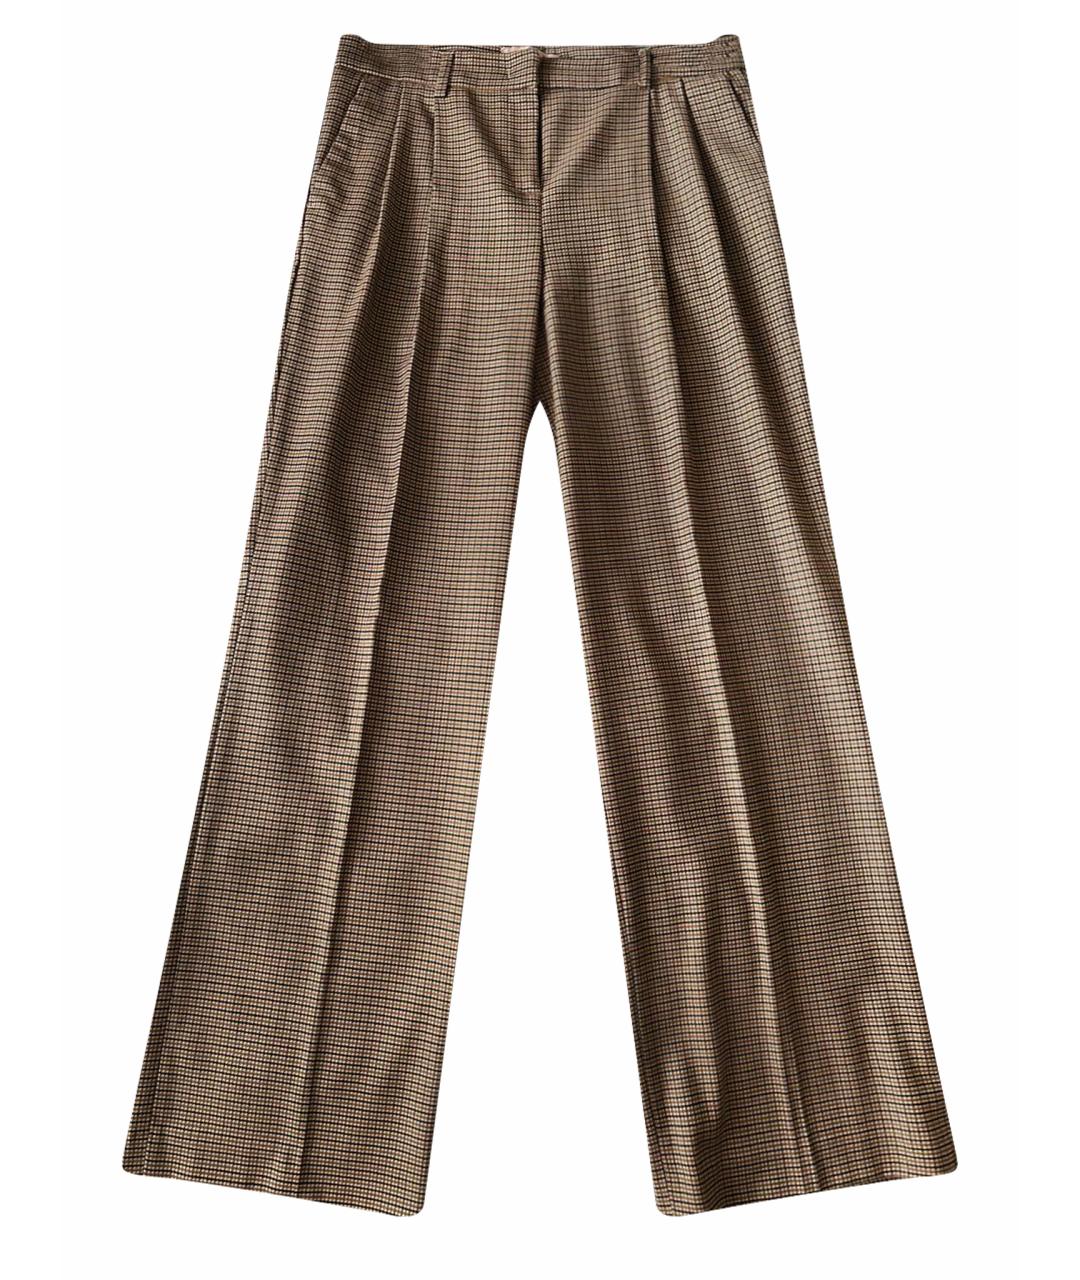 TWIN-SET Коричневые шерстяные брюки широкие, фото 1